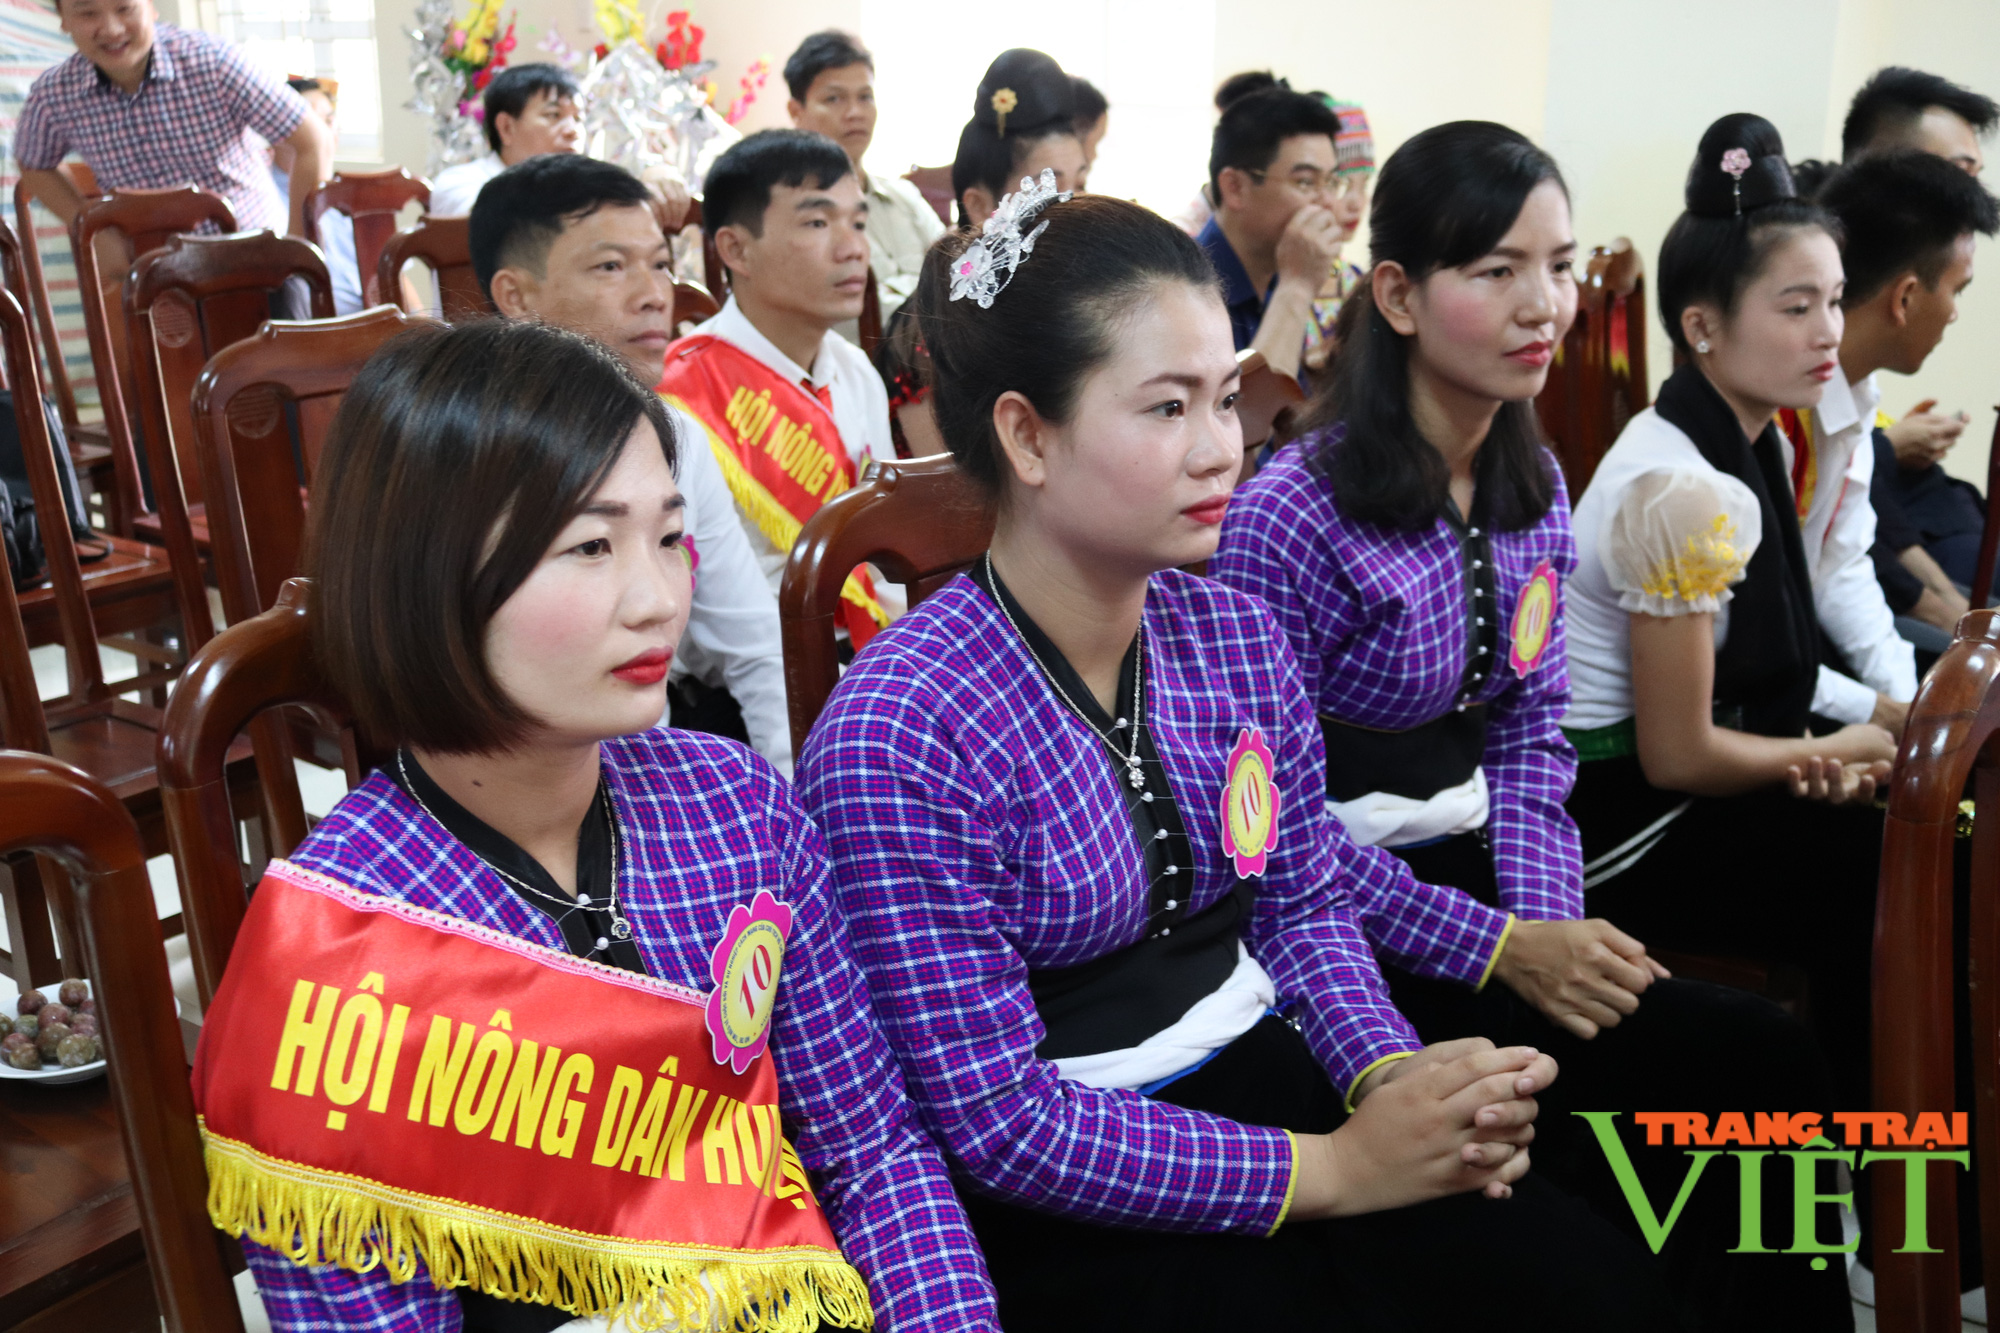 Hội Nông dân tỉnh Sơn La: Xây dựng tổ chức hội trong sạch, vững mạnh - Ảnh 2.